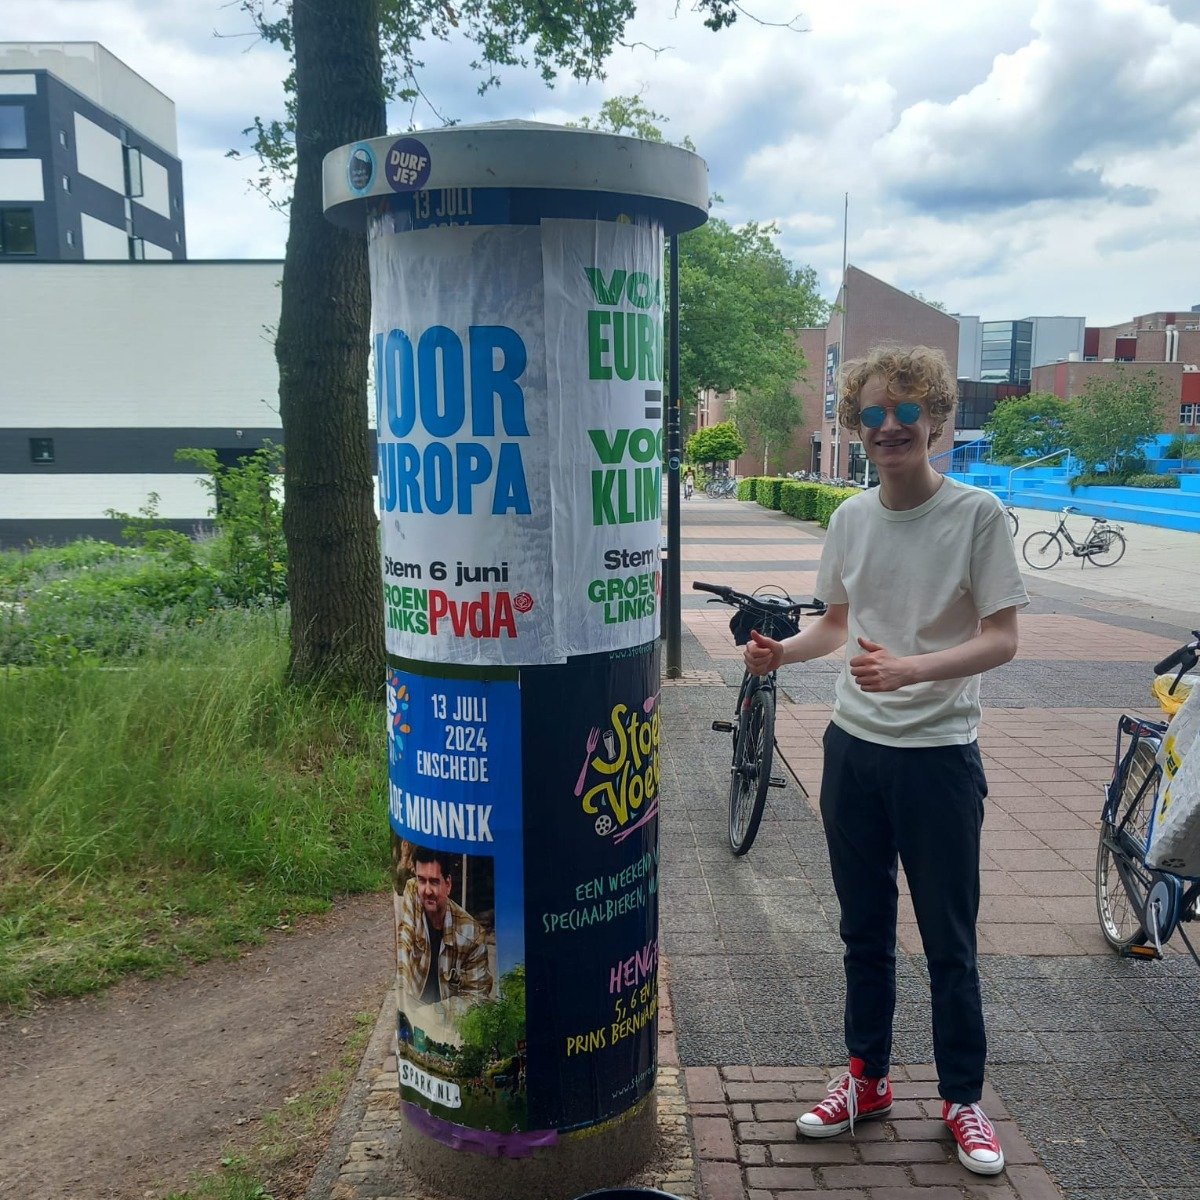 6 juni zijn er verkiezingen voor het Europees Parlement. Dat betekent posters plakken! Ook hier op de campus van Universiteit Twente. 💪  #StemVoorEuropa